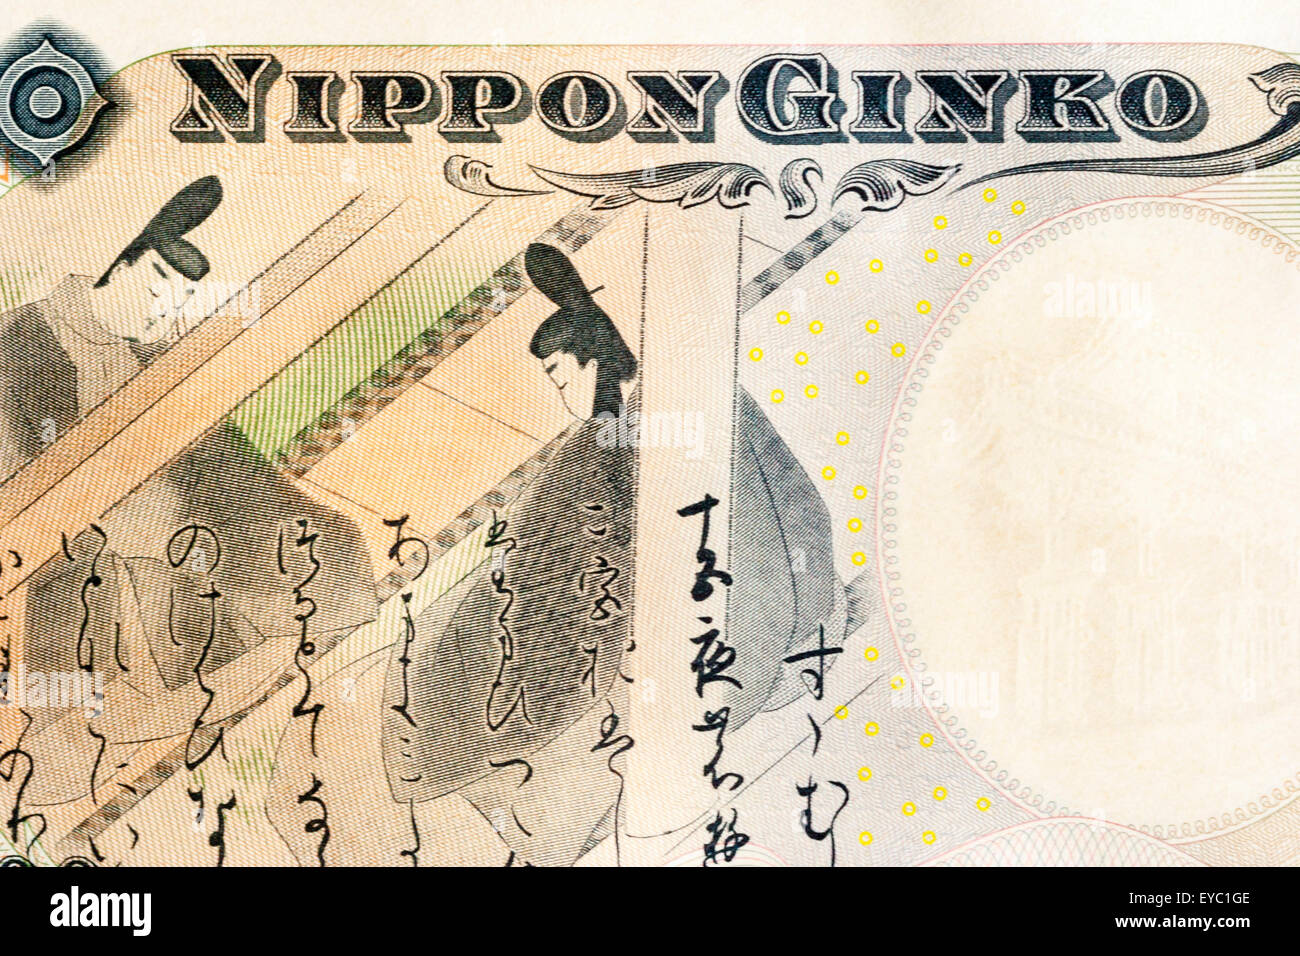 Close up dettaglio di un giapponese 2000 yen banconota che mostra " Nippon Ginkgo" Banca del Giappone e una scena dal racconto di Genji. Foto Stock